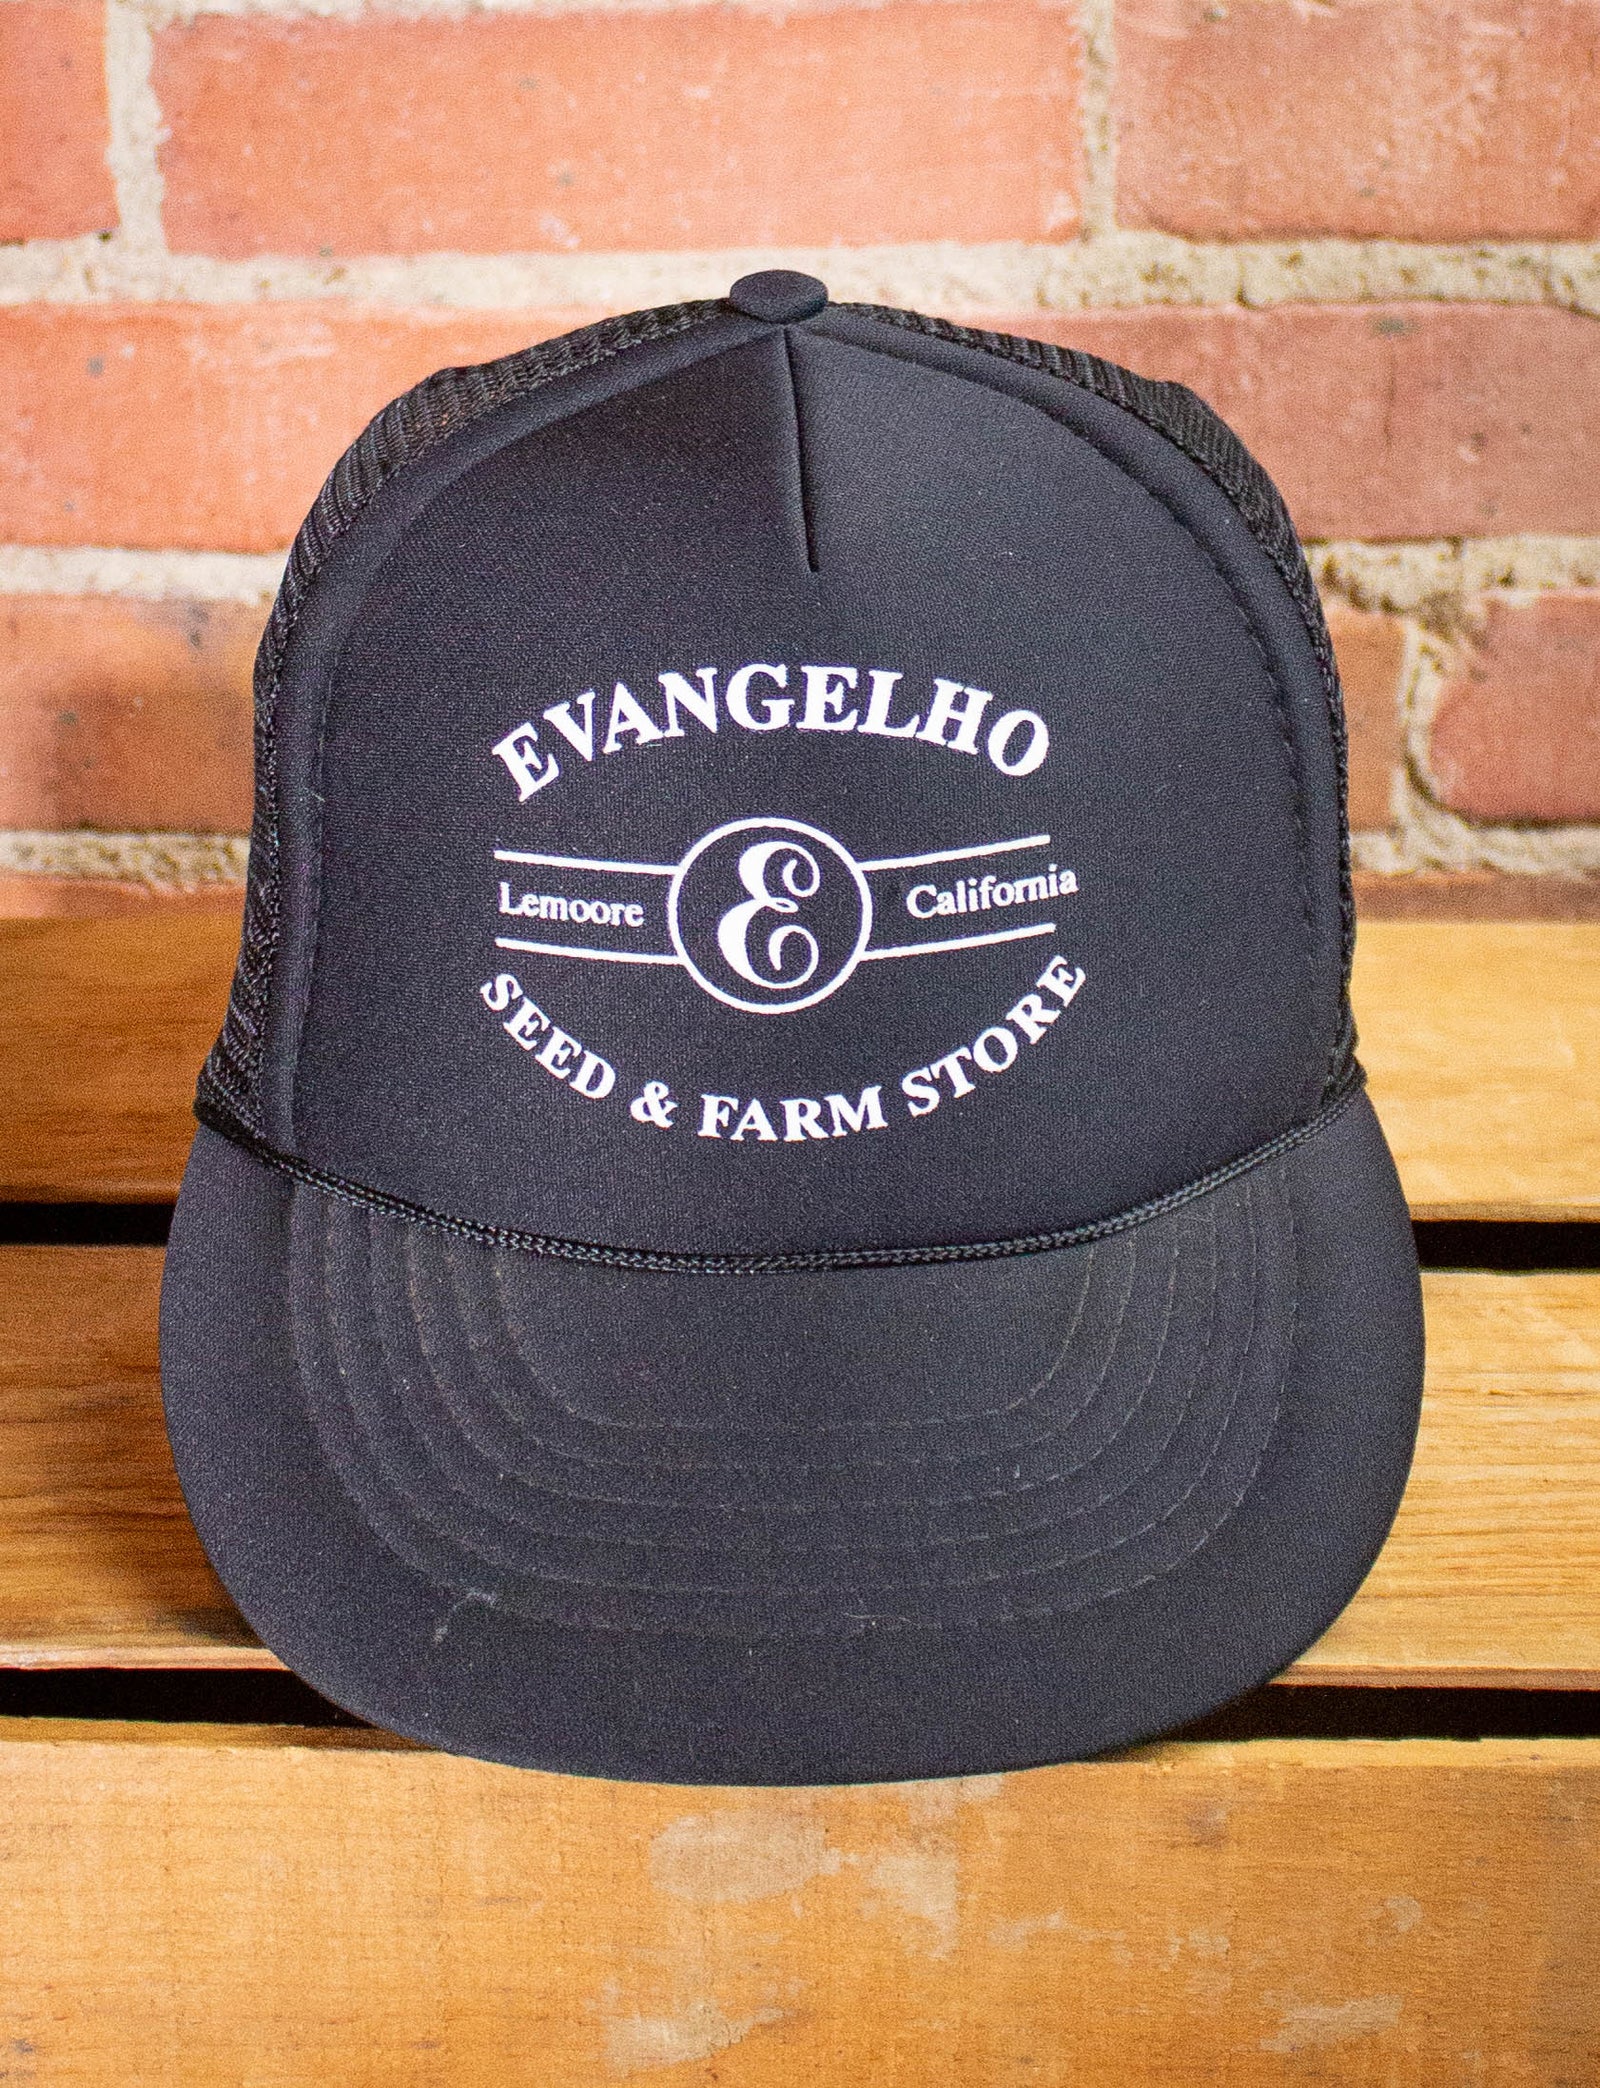 Vintage Evangelho Lemoore California Trucker Hat